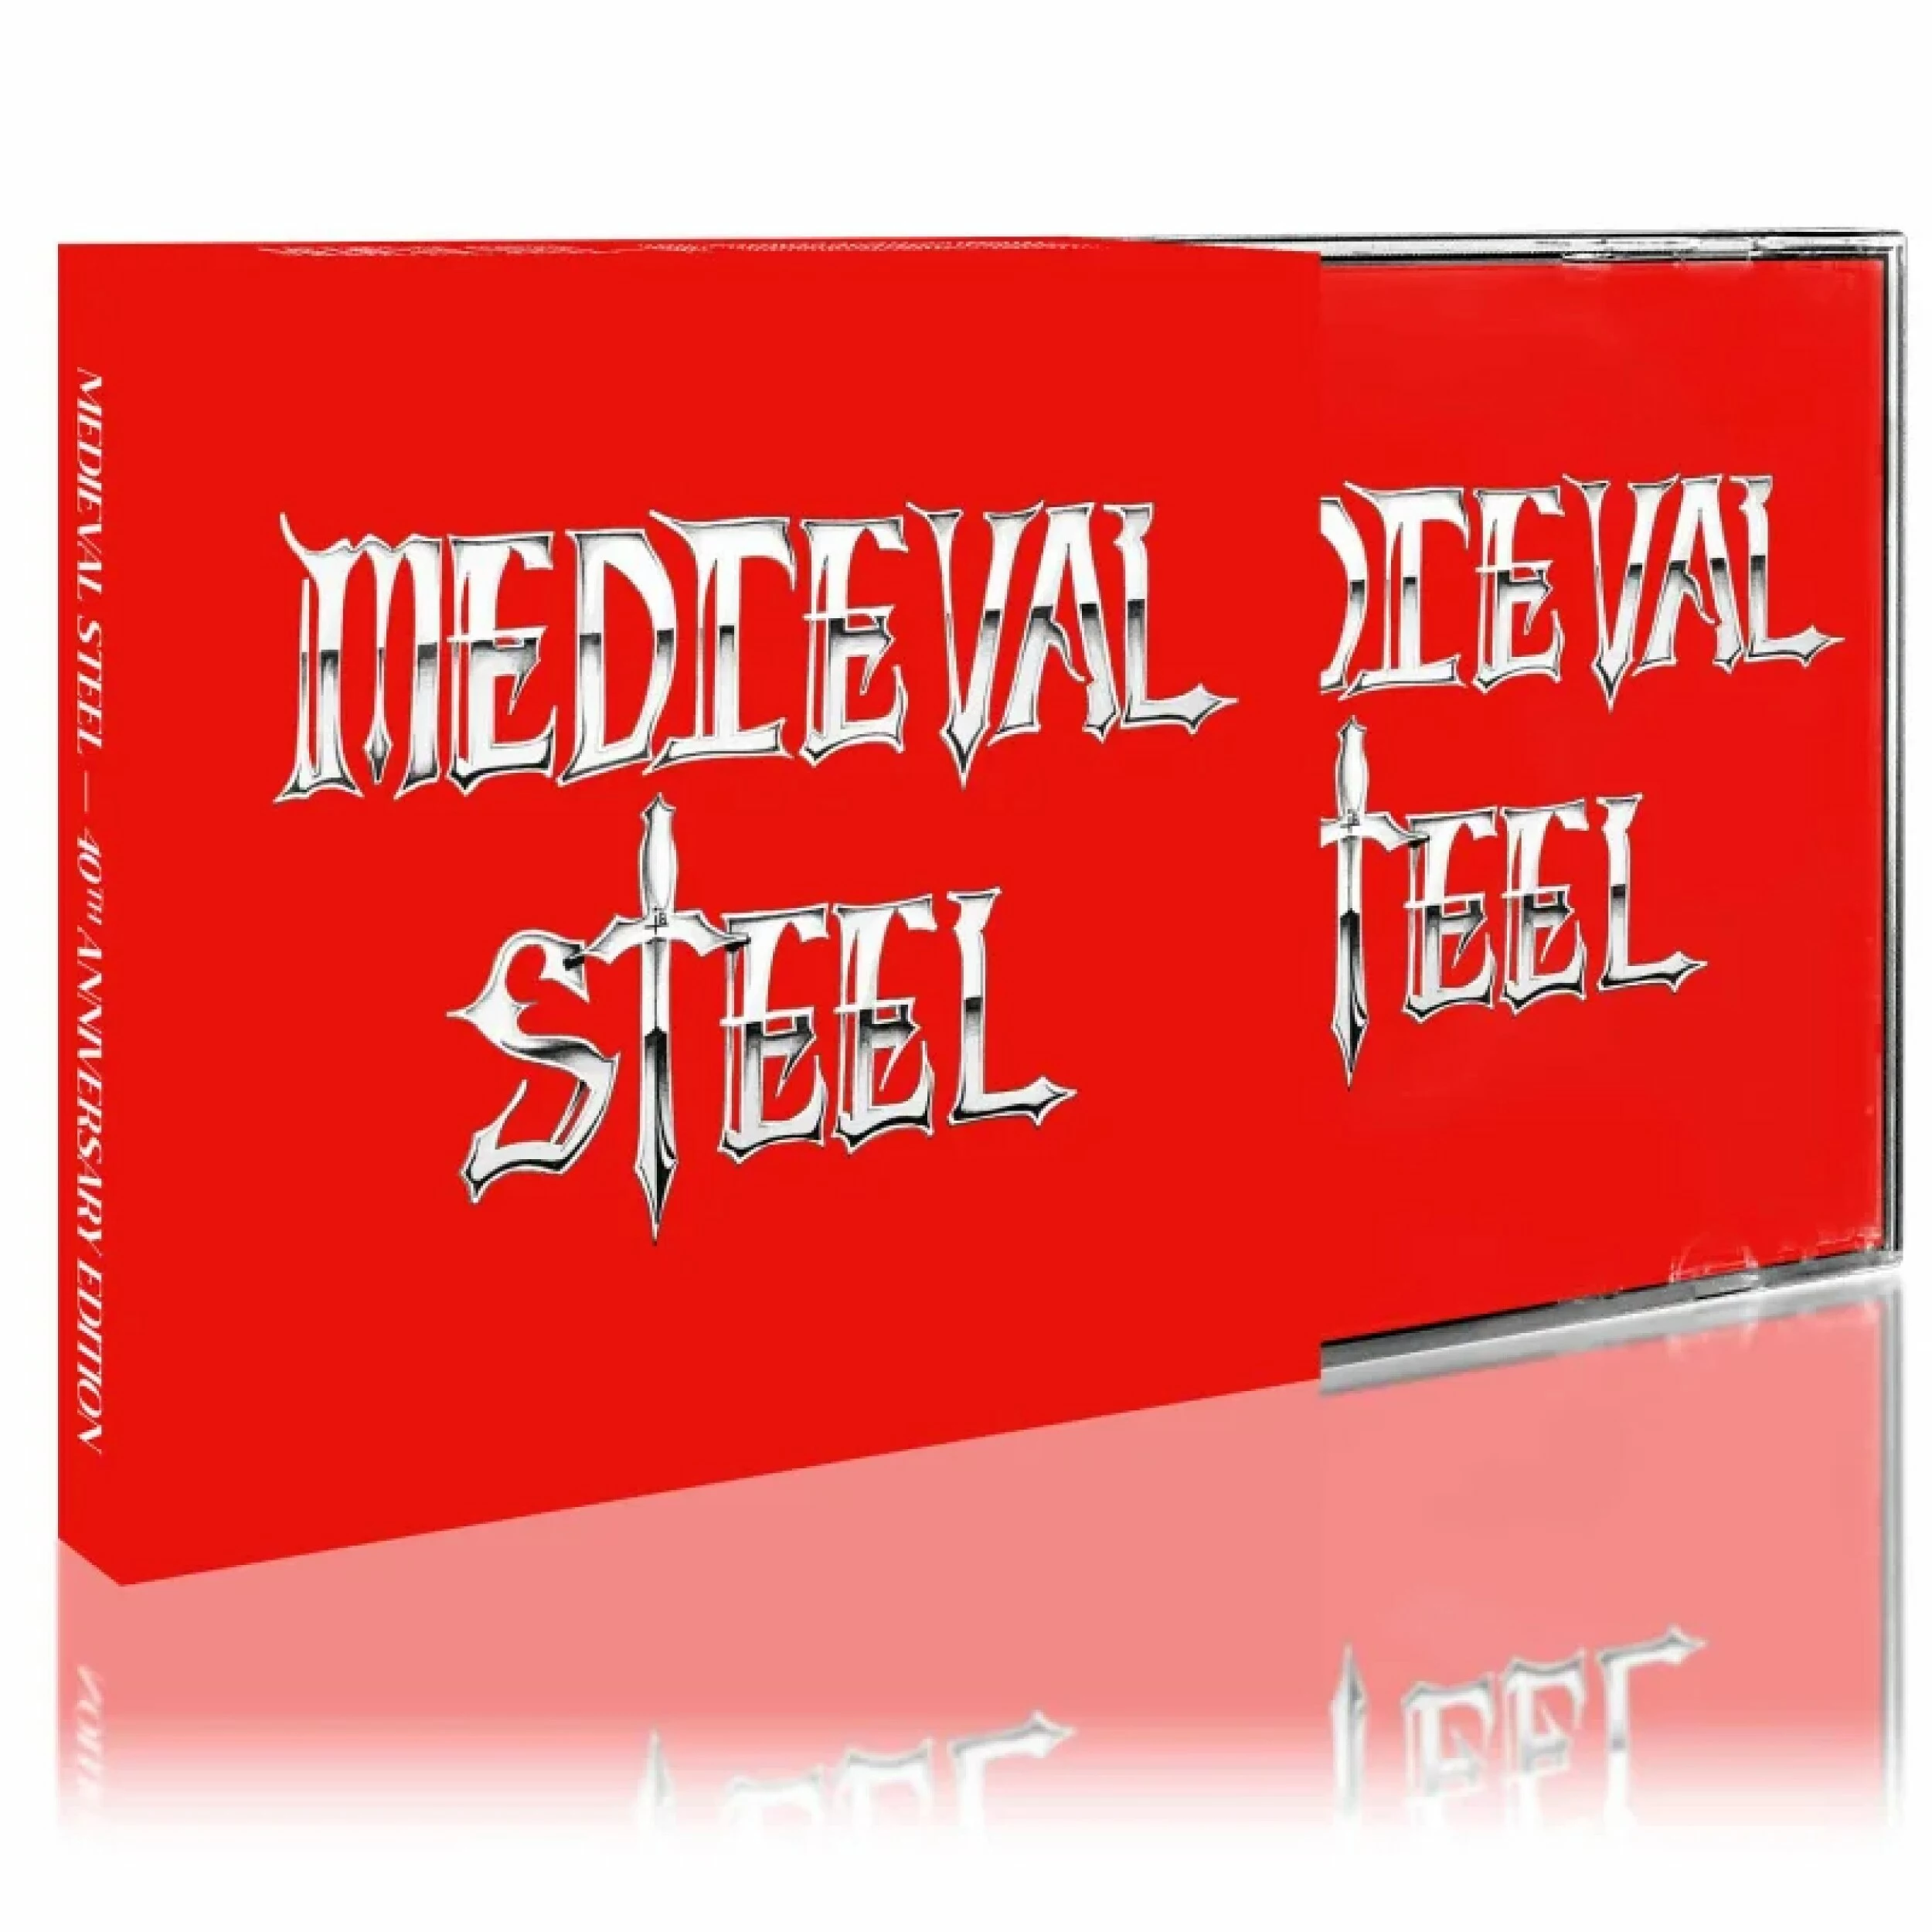 MEDIEVAL STEEL - Medieval Steel  [CD] - 第 1/1 張圖片